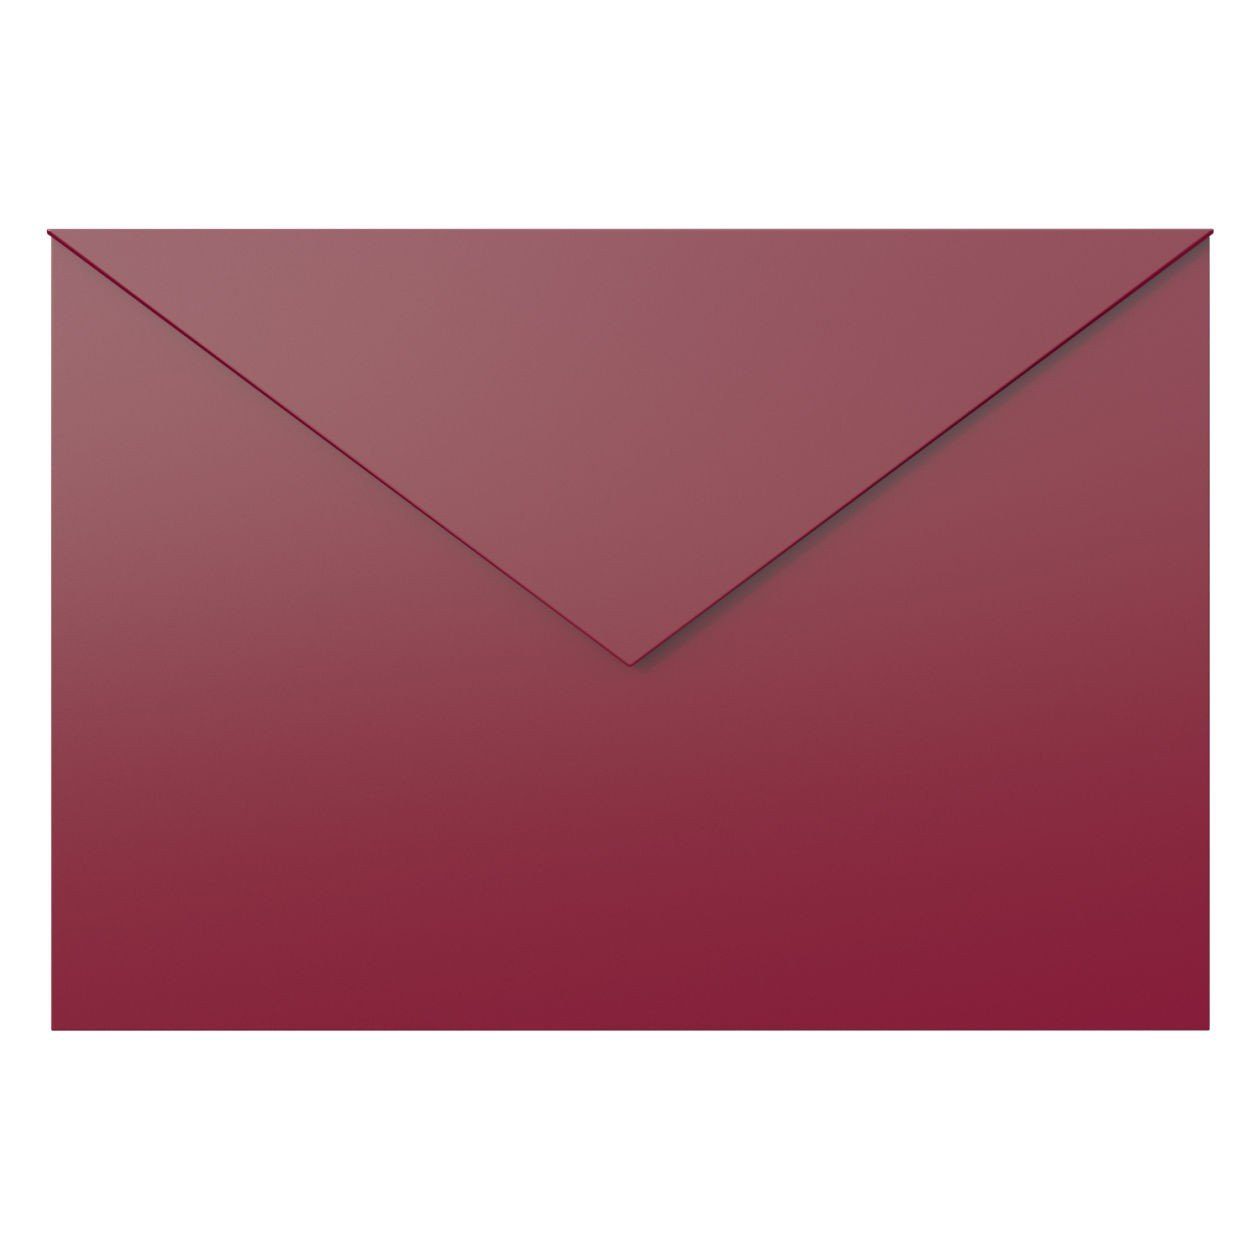 Bravios Briefkasten Briefkasten Letter Rot